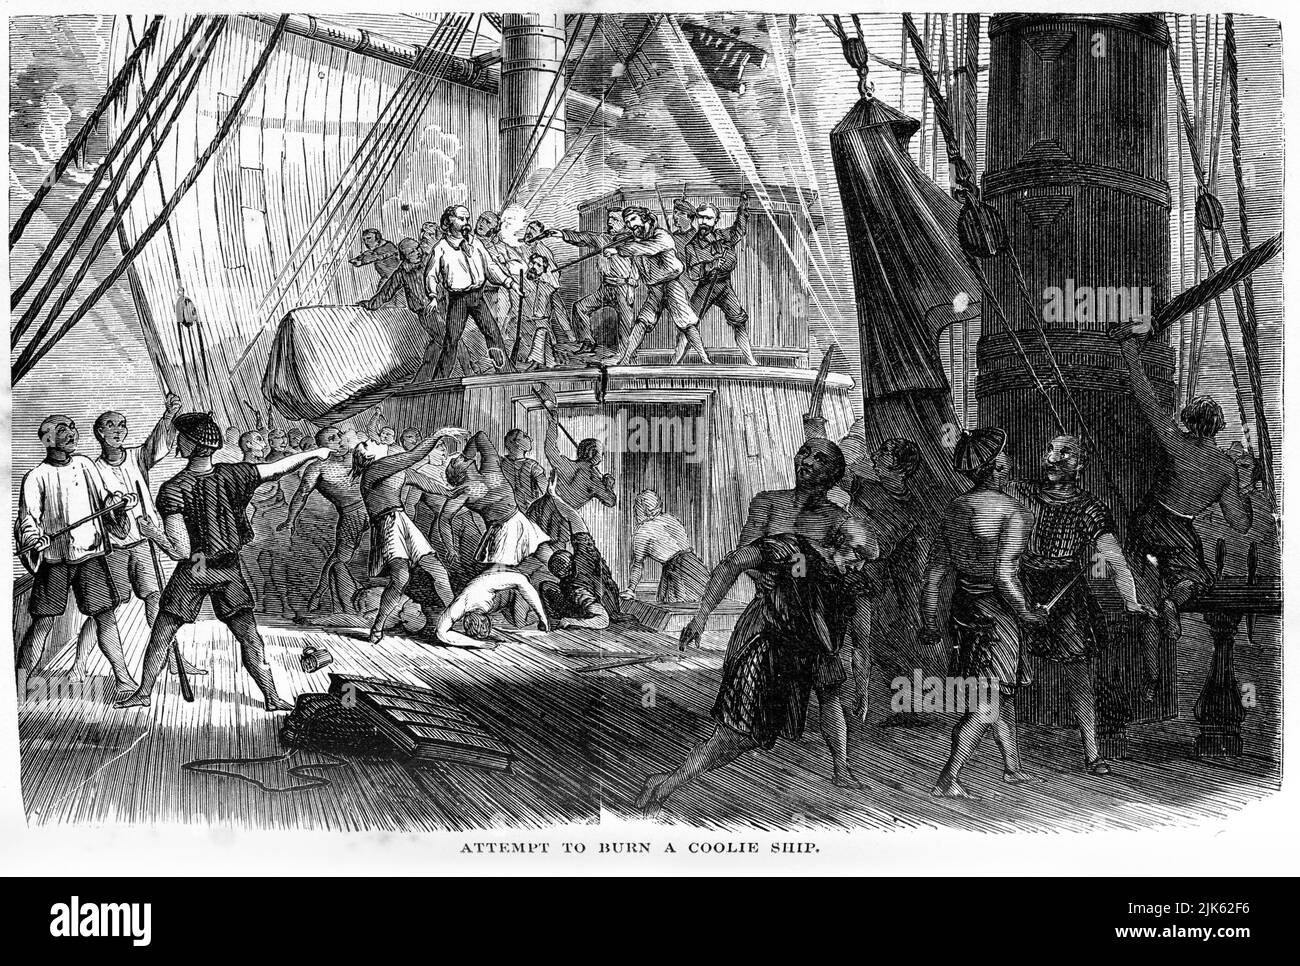 Gravure d'une tentative de brûlure d'un navire de refroidissement, 1877 Banque D'Images